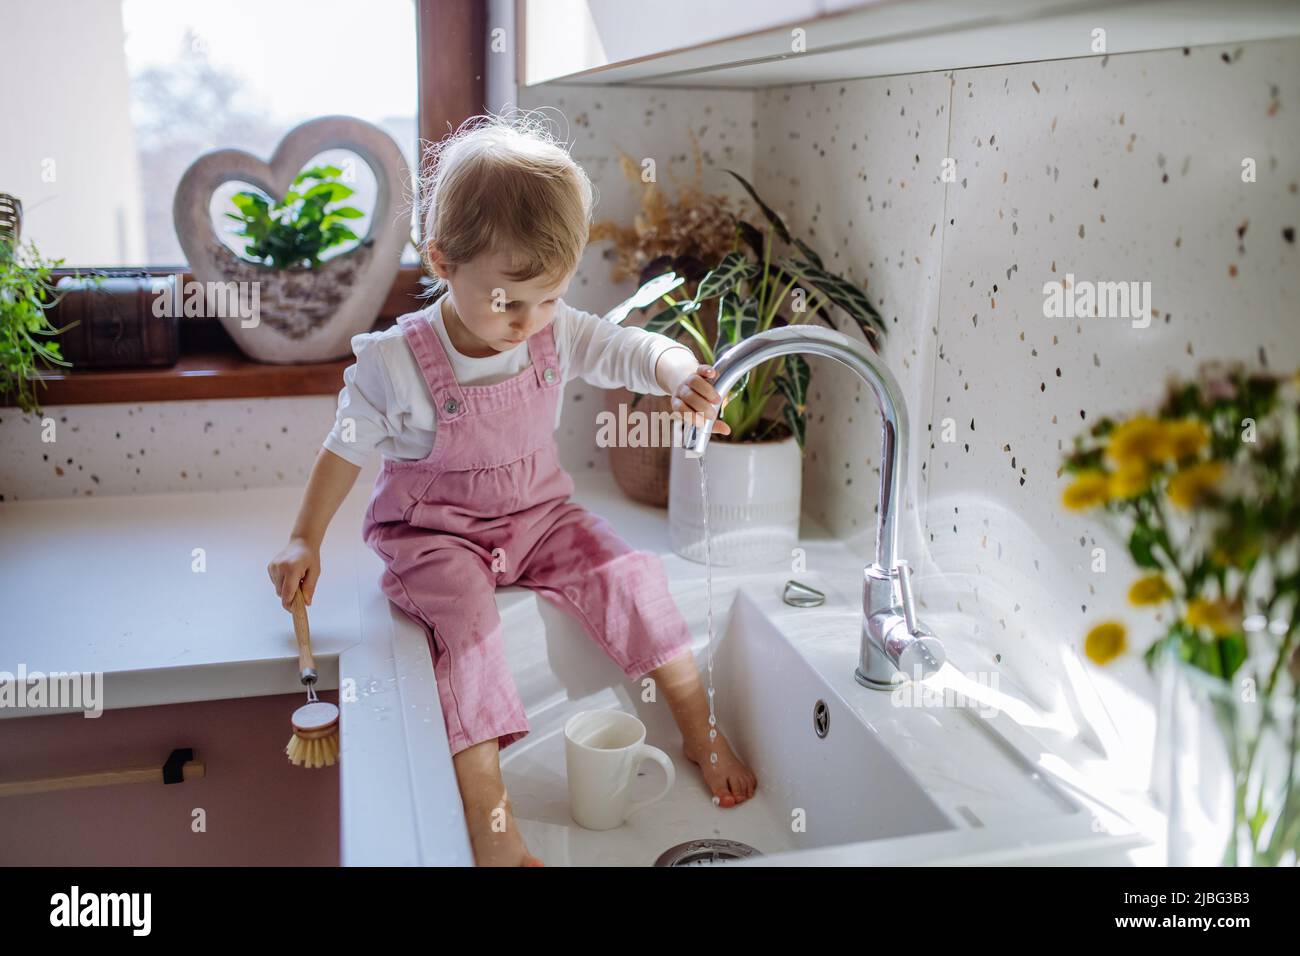 Kleines Mädchen, das auf der Küchentheke sitzt und im Waschbecken in der Küche einen Waschbecher hat. Stockfoto